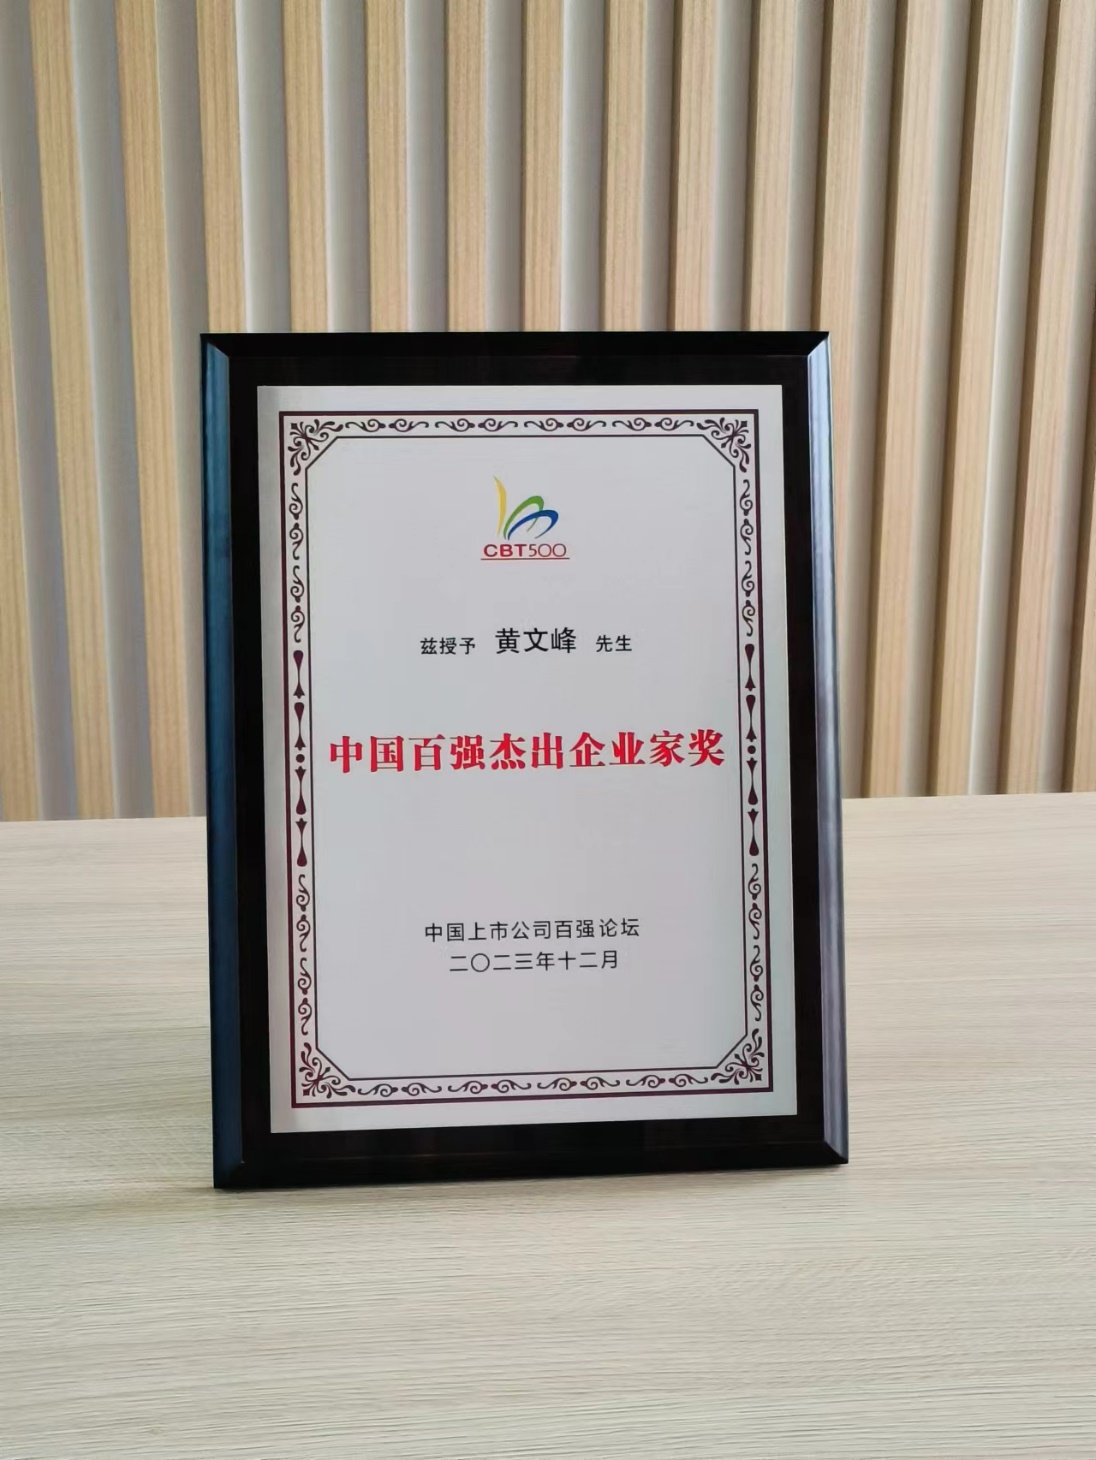 天能重工董事长黄文峰先生荣获“中国百强杰出企业家奖”